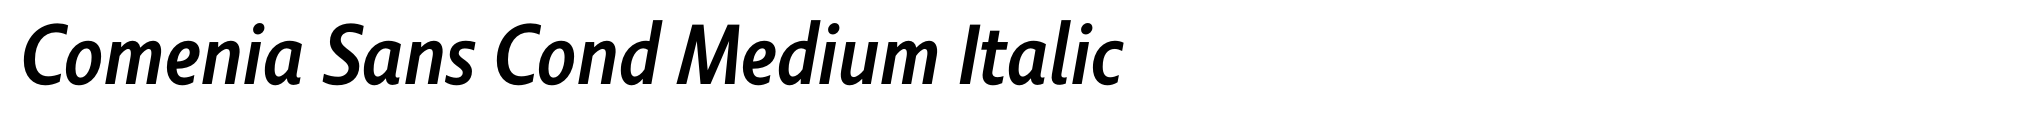 Comenia Sans Cond Medium Italic image